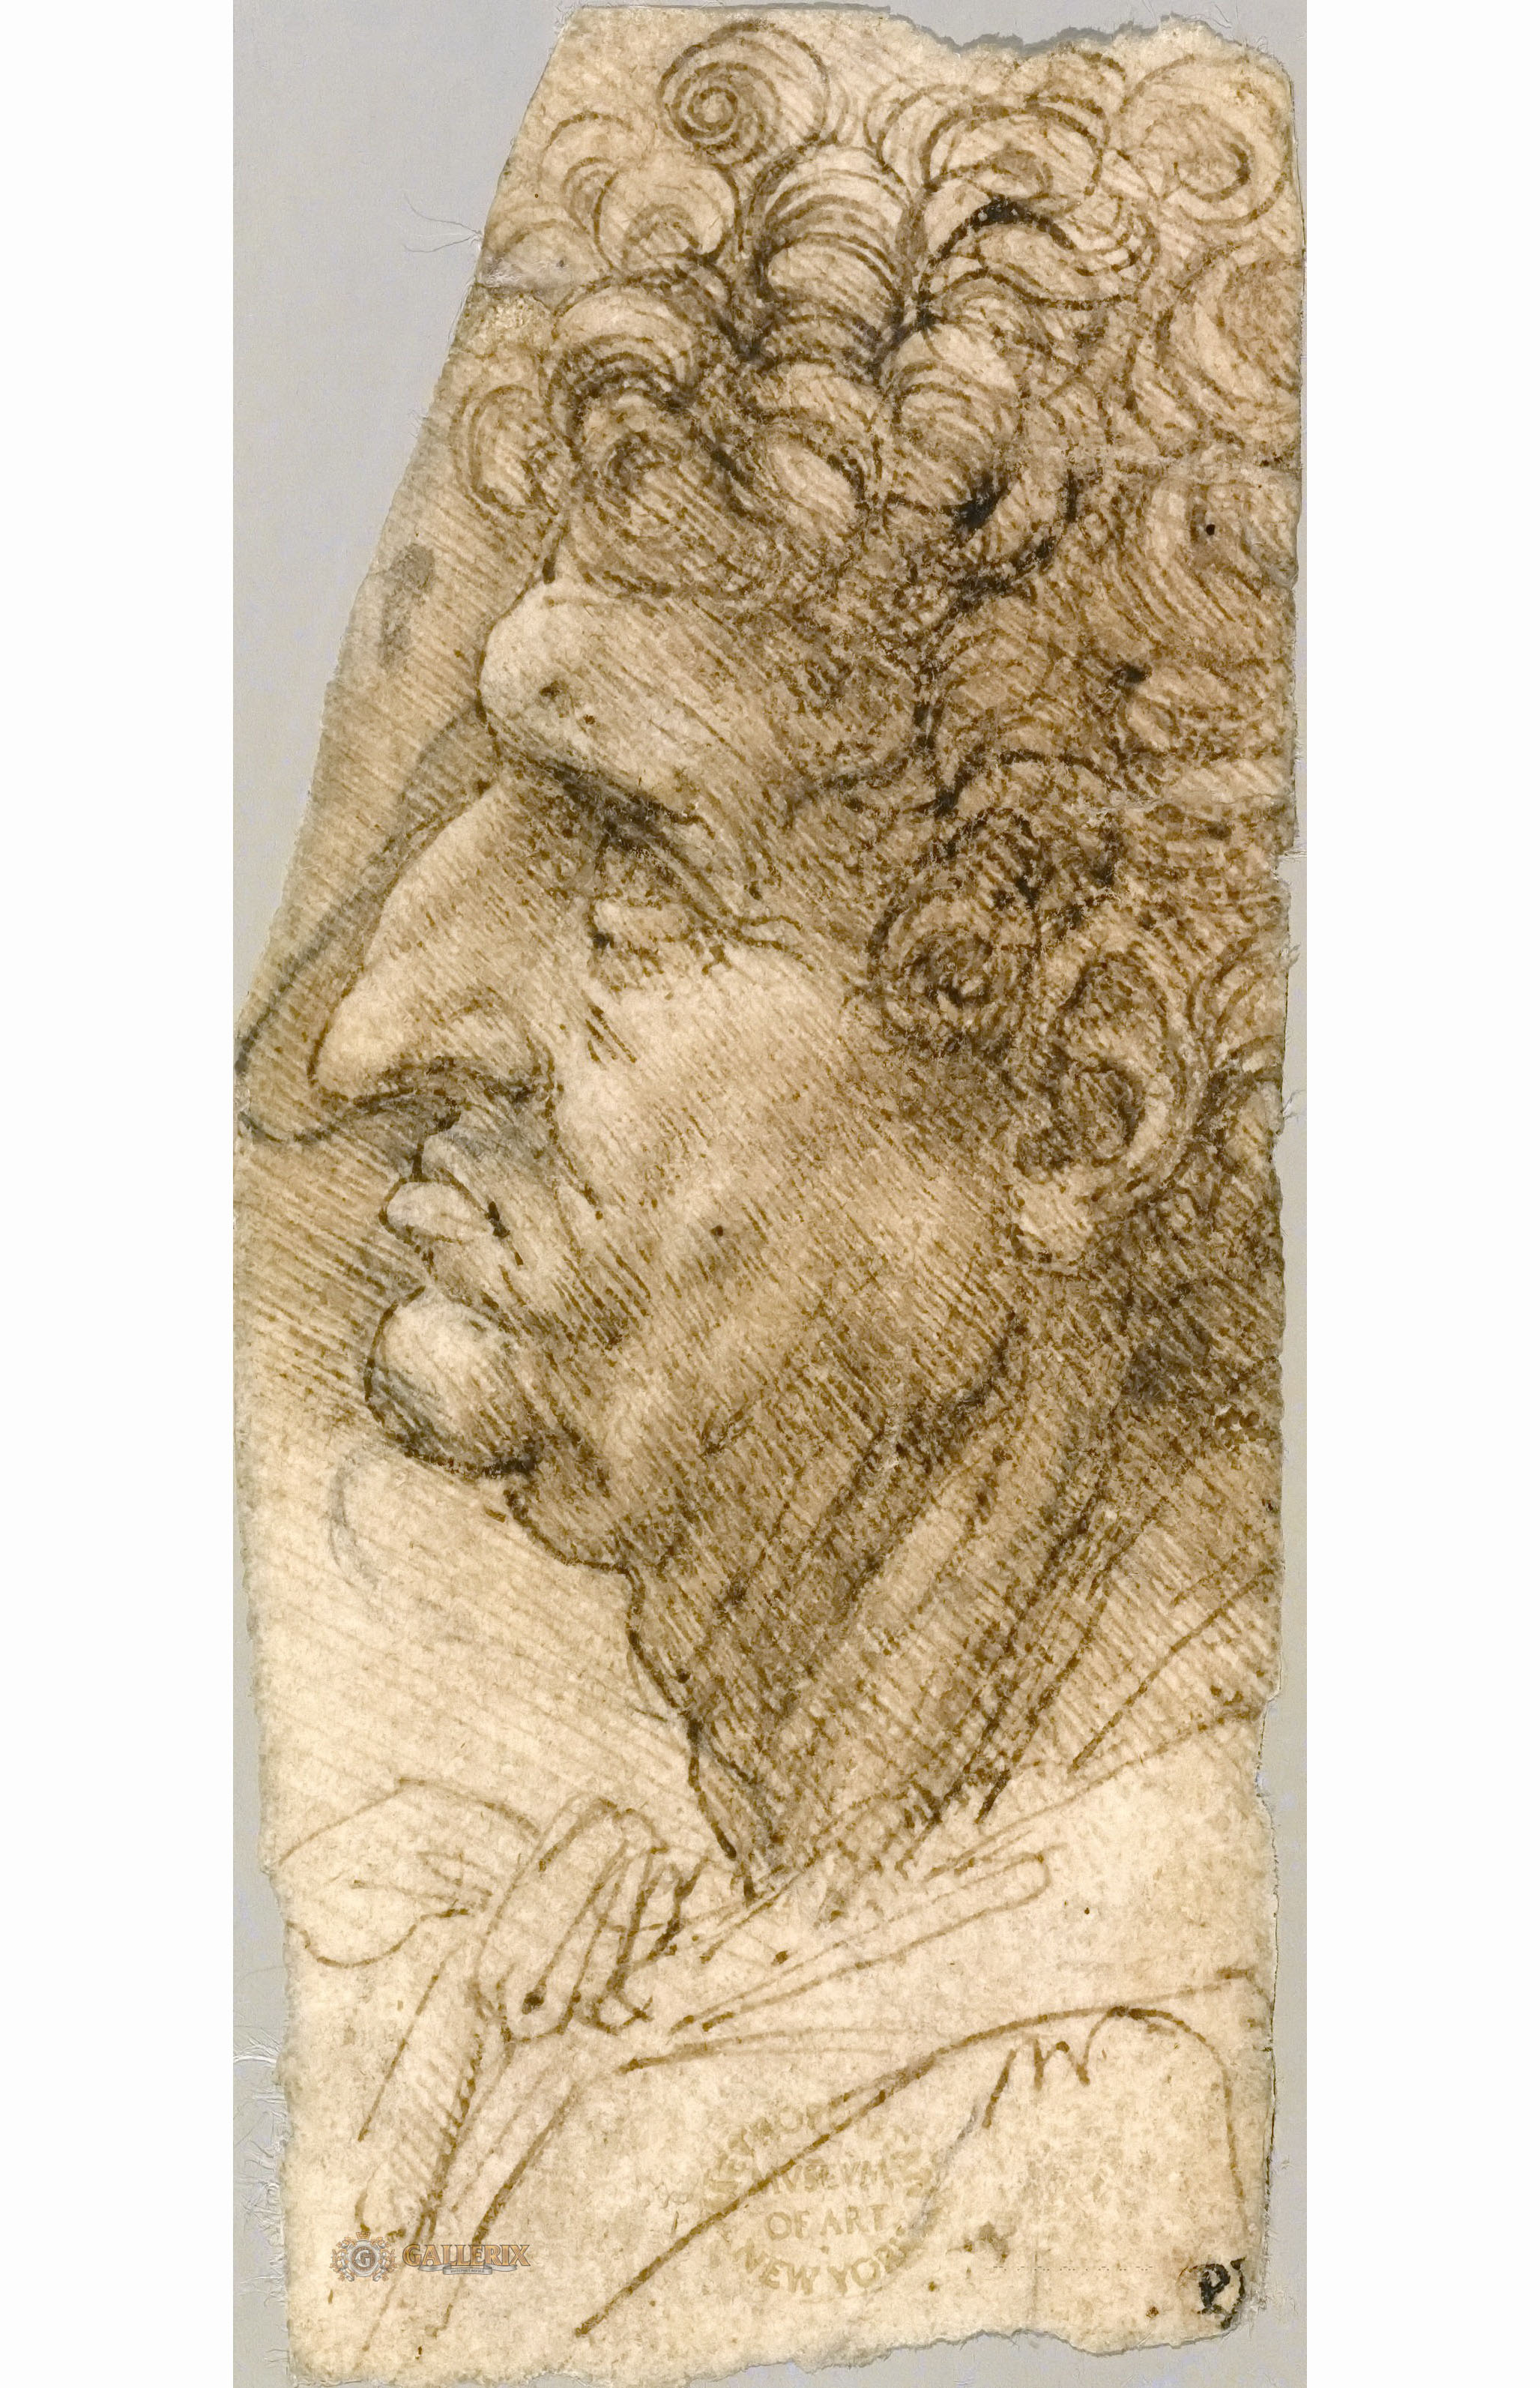 Леонардо да Винчи. "Голова мужчины в профиль". 1490-1494. Музей Метрополитен, Нью-Йорк.